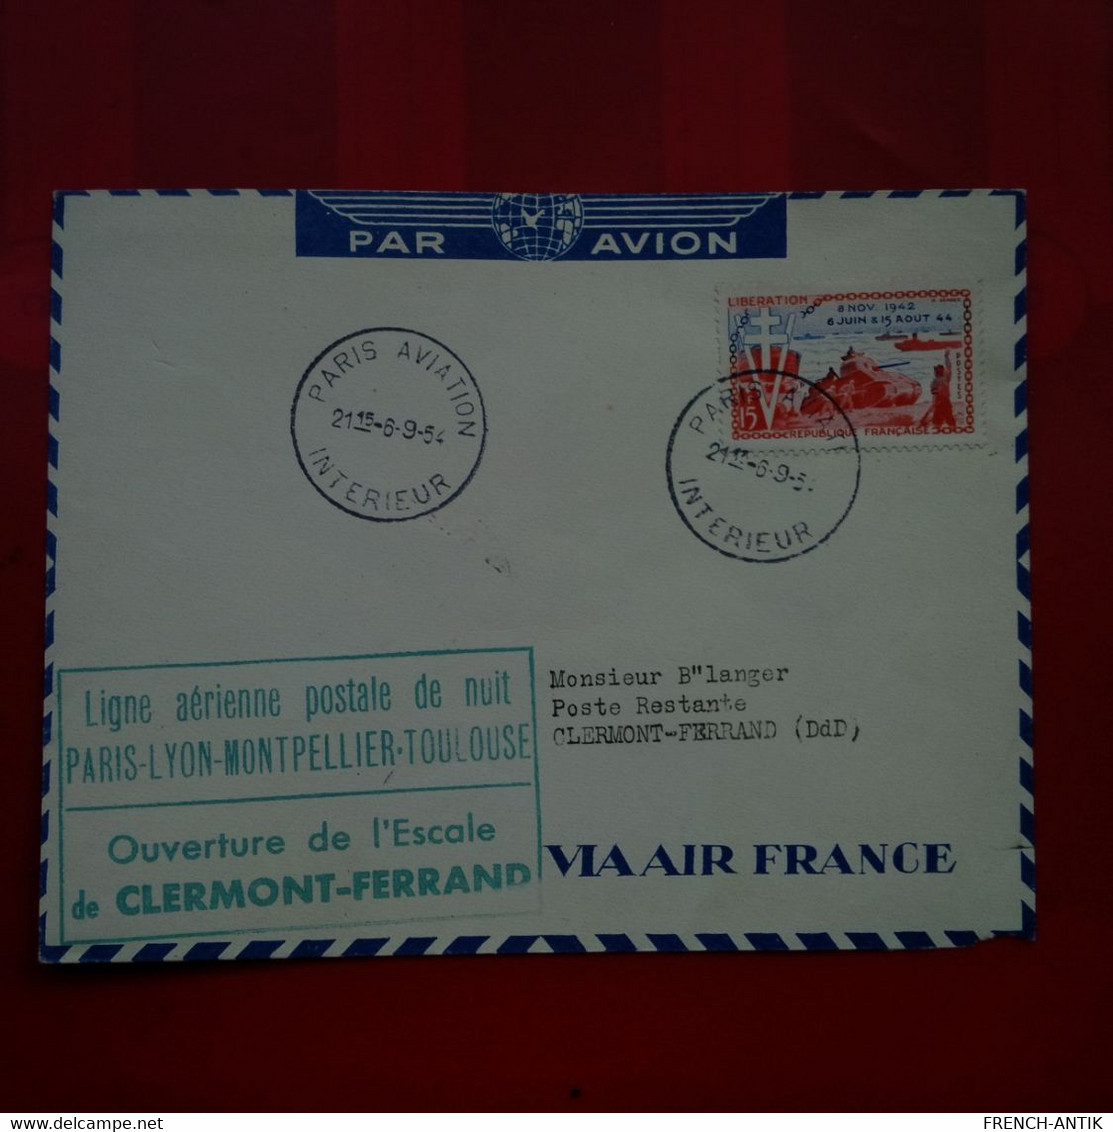 LETTRE LIGNE AERIENNE POSTALE DE NUIT PARIS LYON MONTPELLIER TOULOUSE OUVERTURE DE L ESCALE DE CLERMONT 1954 - Covers & Documents